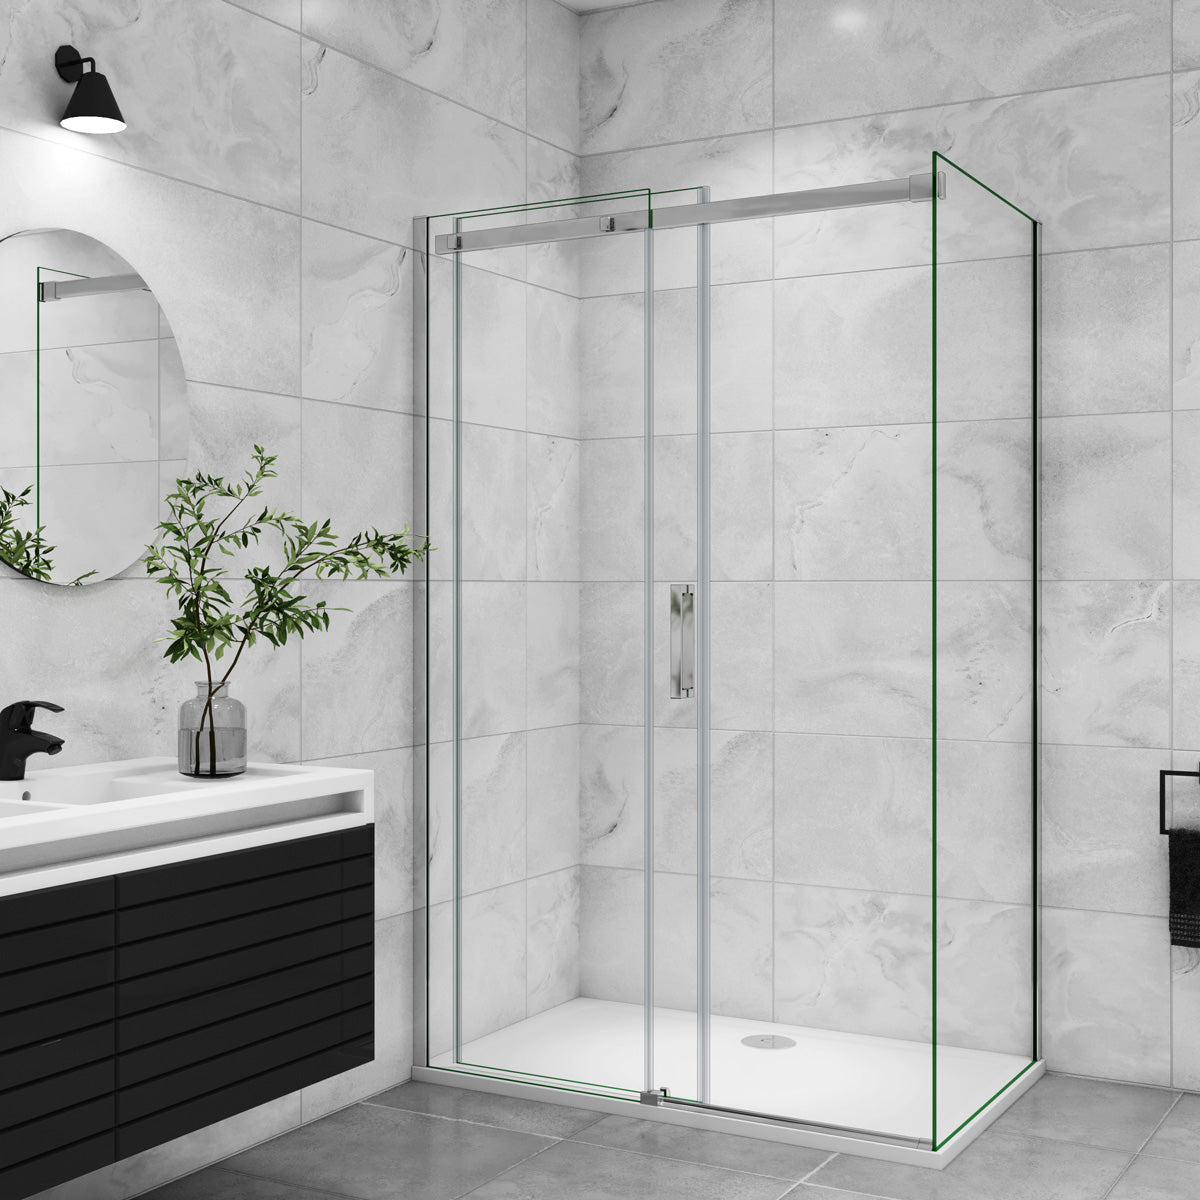 Duschtür+Seitenwand Duschkabine 100x100 cm Glasstärke 8mm Schiebetür Dusche Duschabtrennung